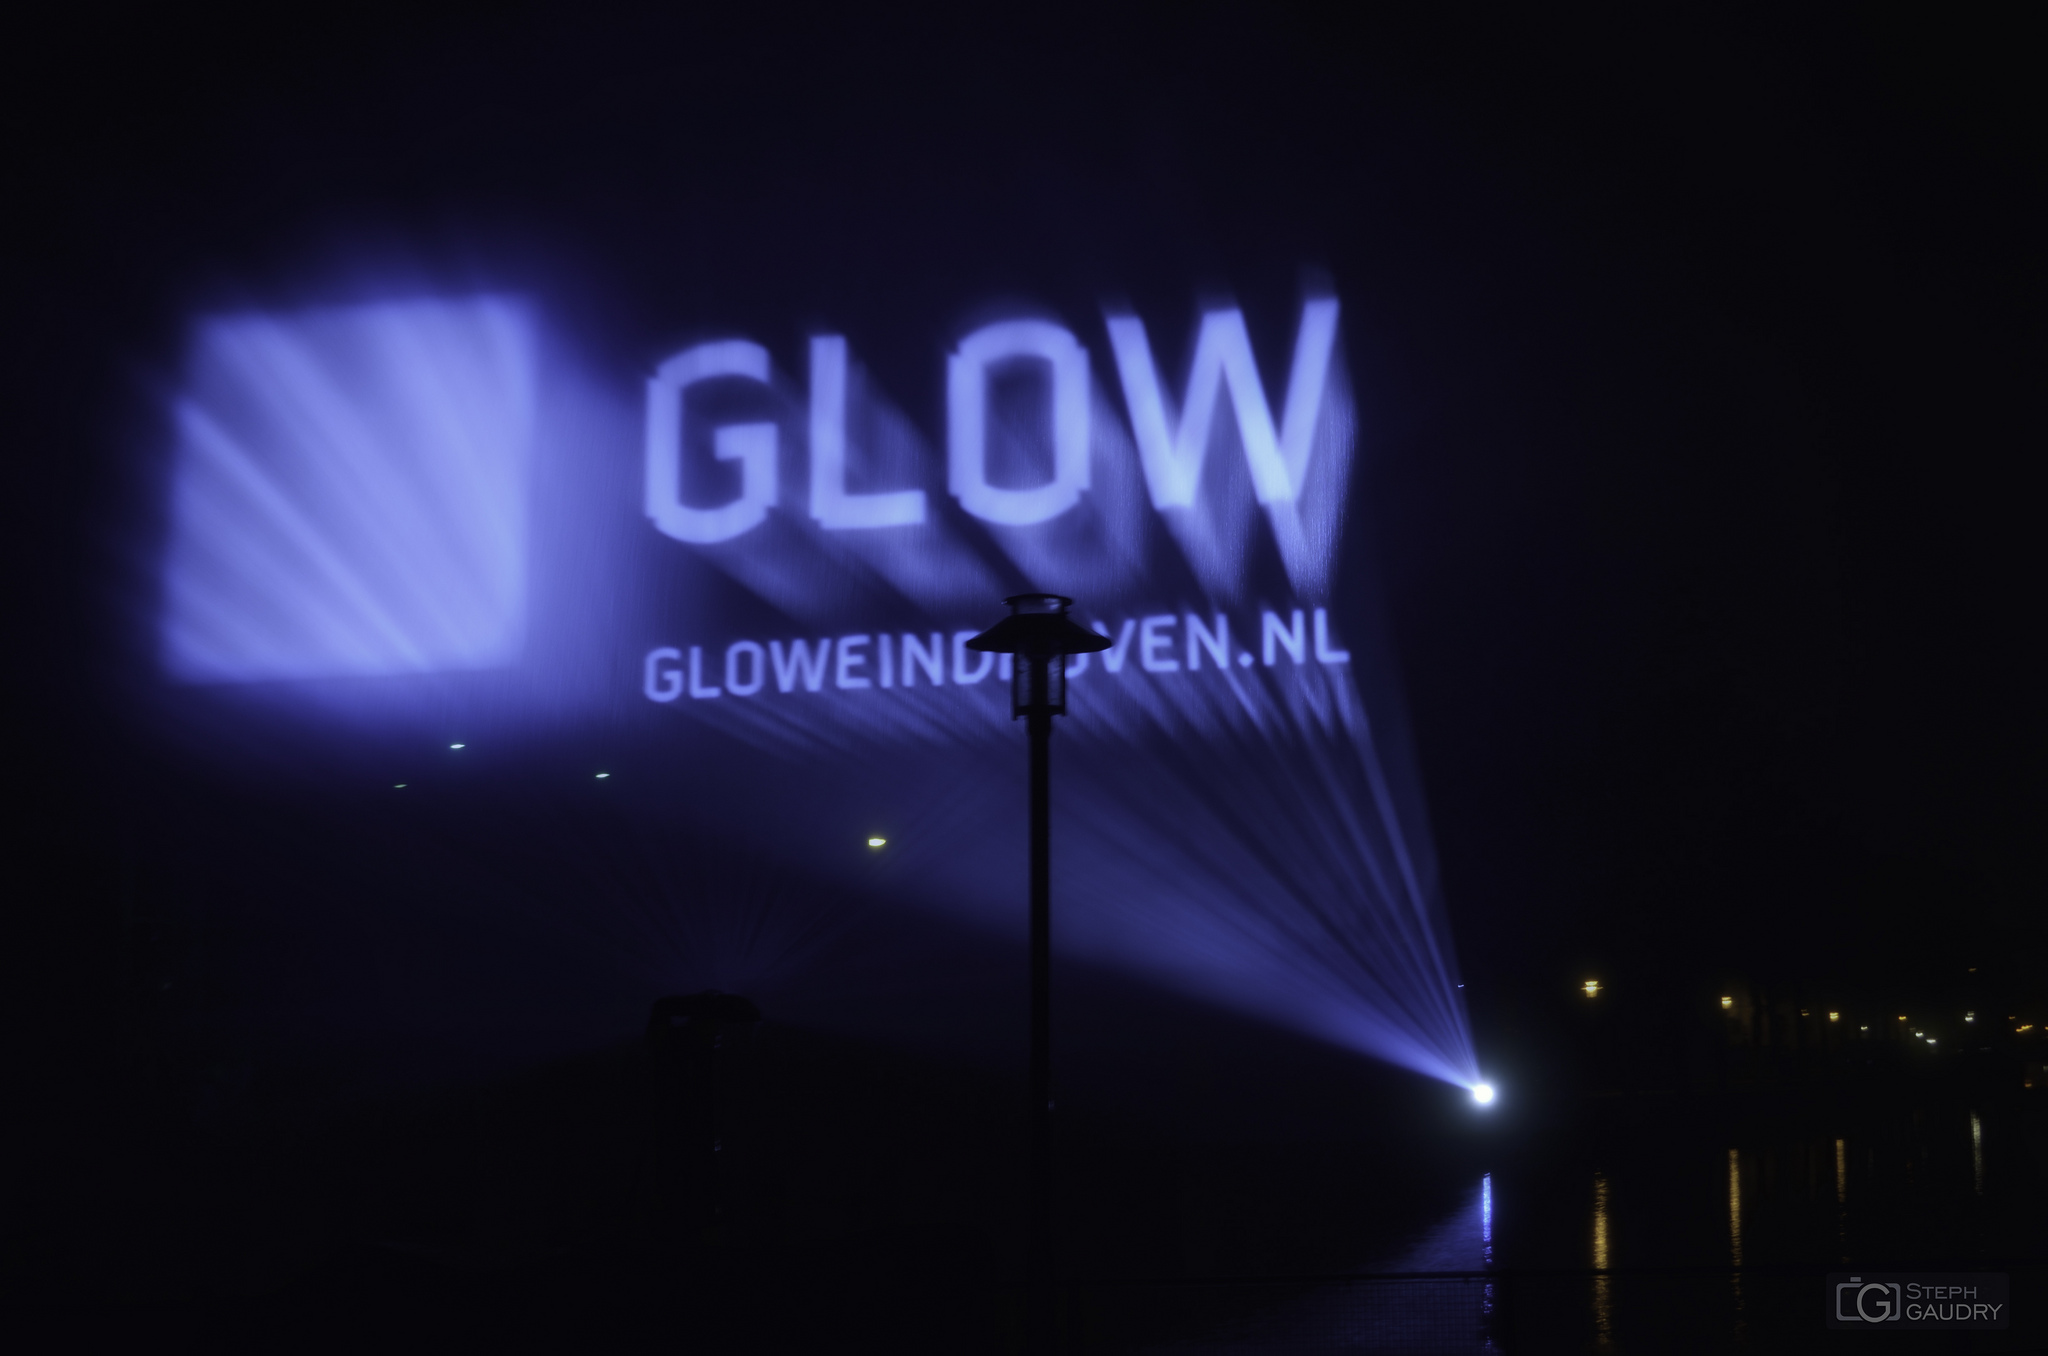 Eindhoven / Eindhoven glow 2013 - Laser